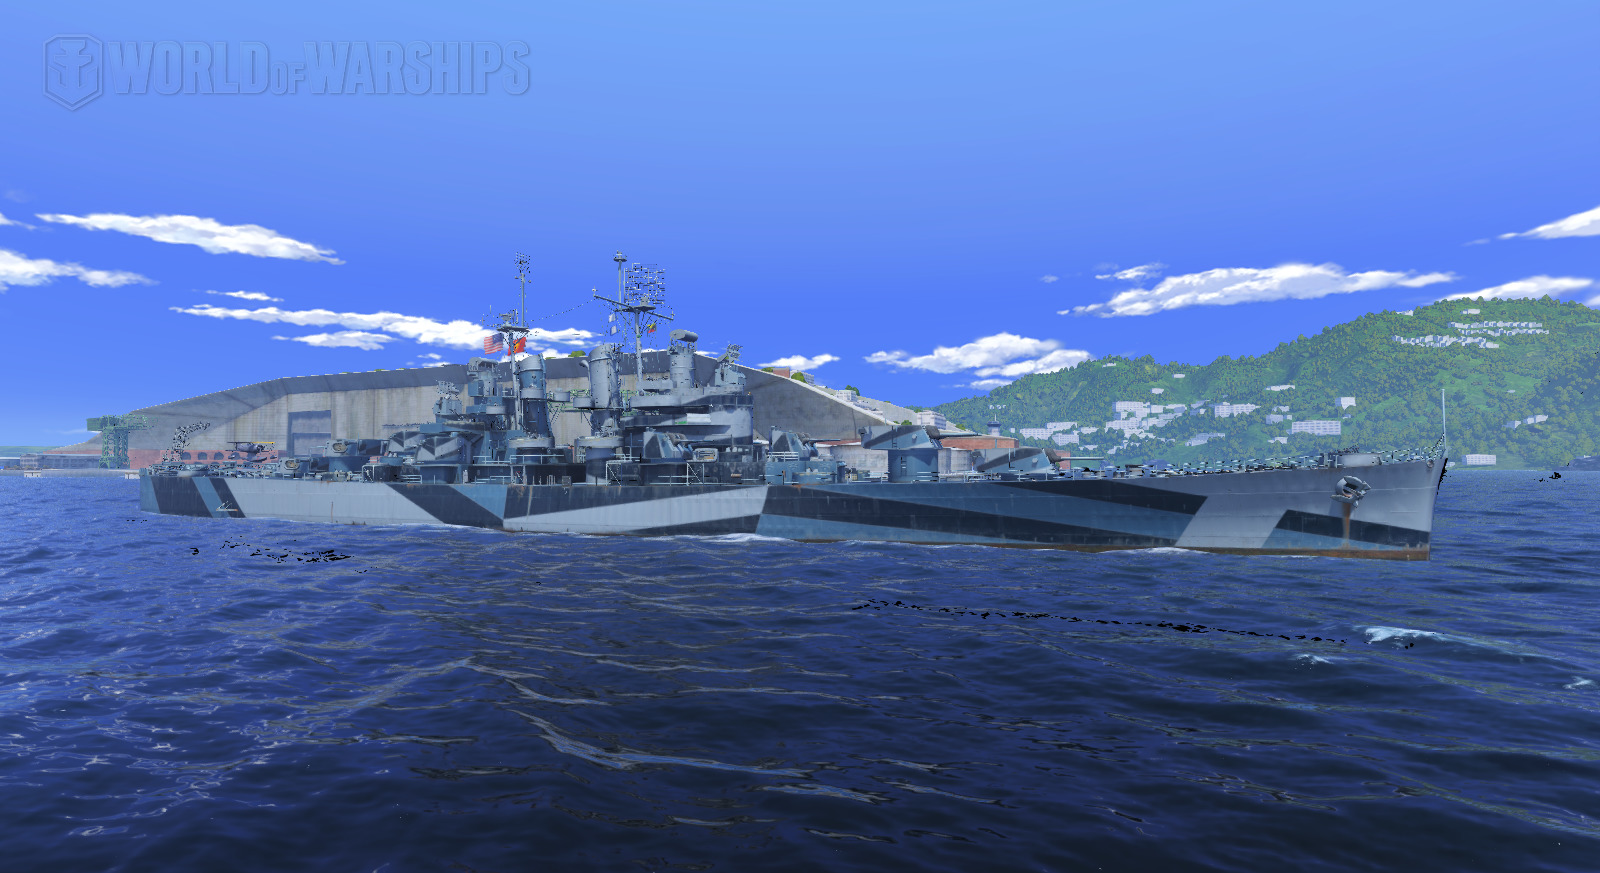 cleveland world of warships beta